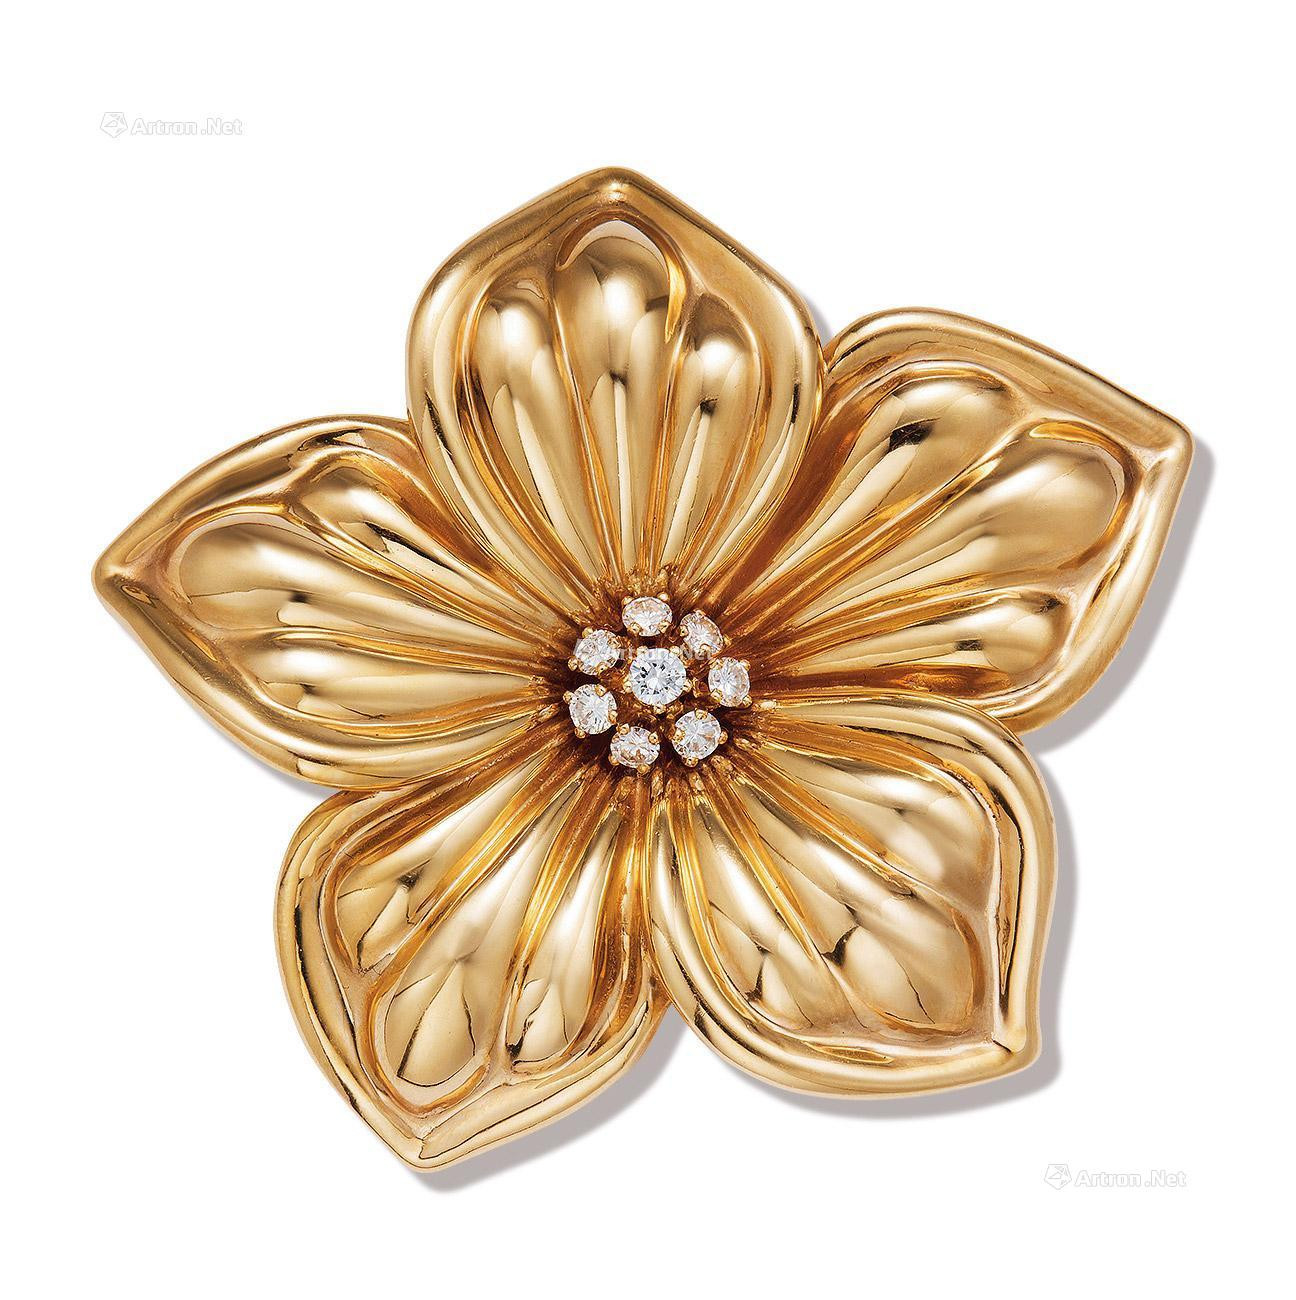 A DIAMOND ‘BAUHINIA FLOWER’ BROOCH， BY VAN CLEEF & ARPELS